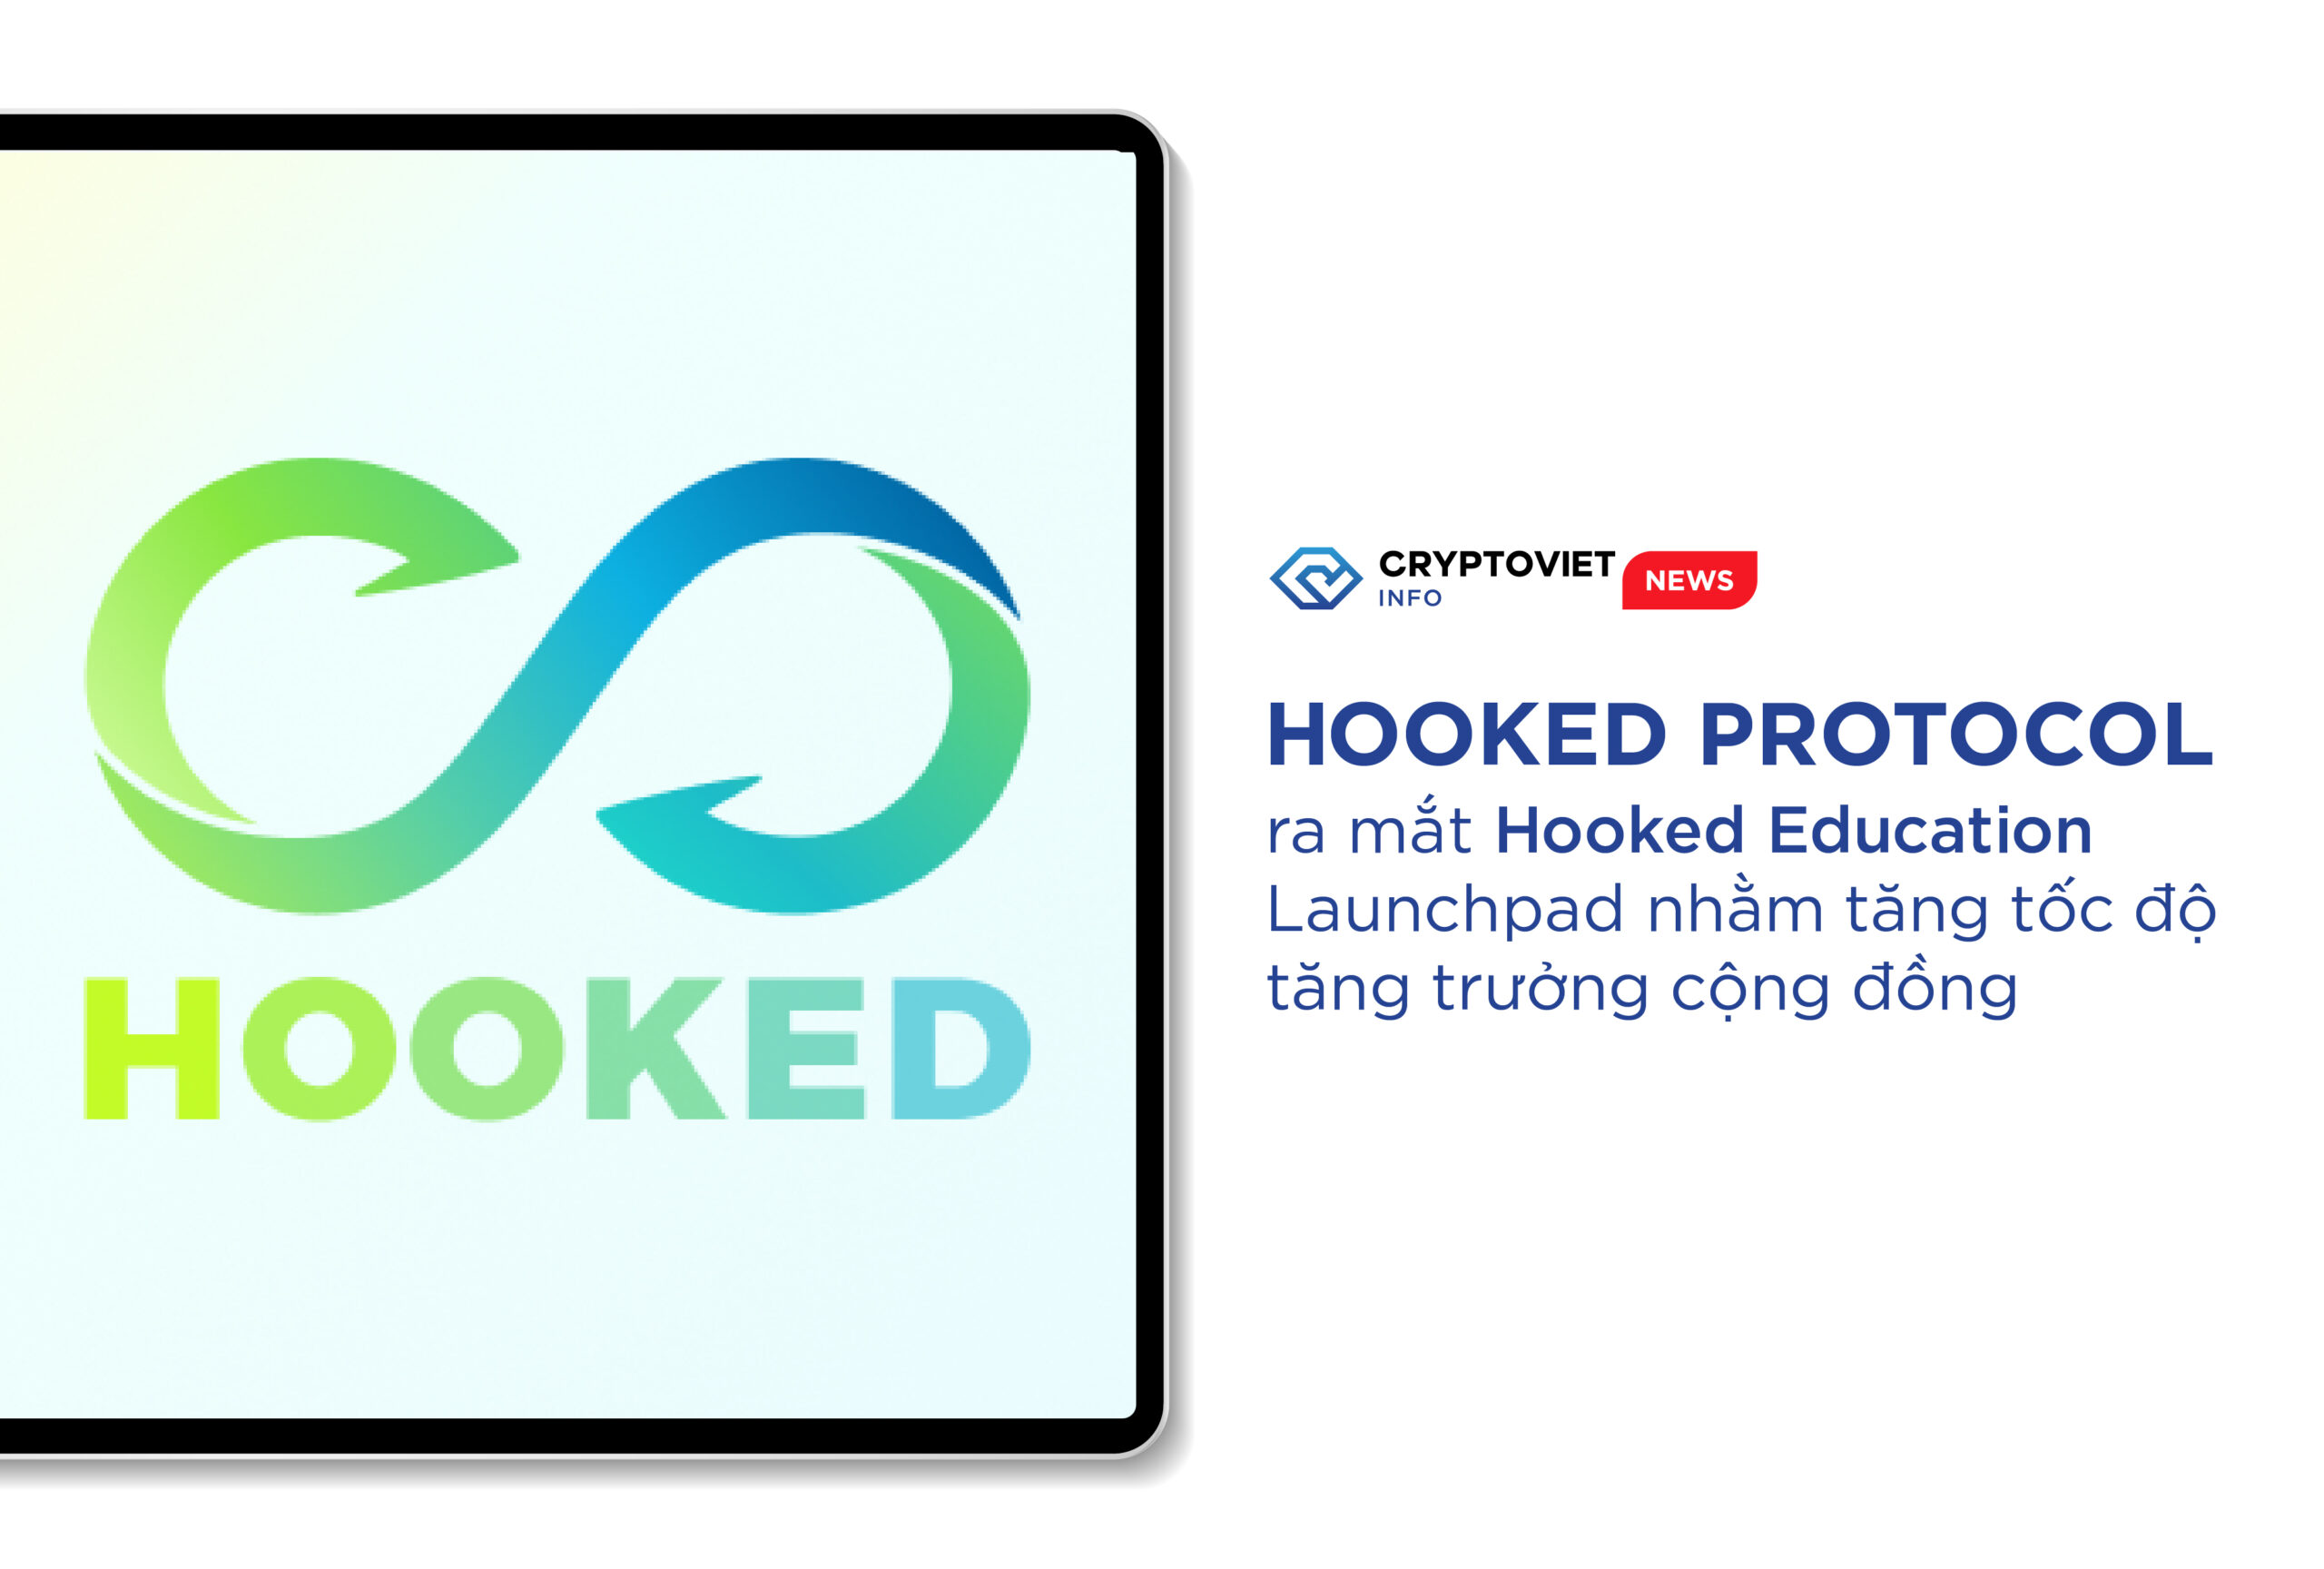 Hooked Protocol ra mắt Hooked Education Launchpad nhằm tăng tốc độ tăng trưởng cộng đồng